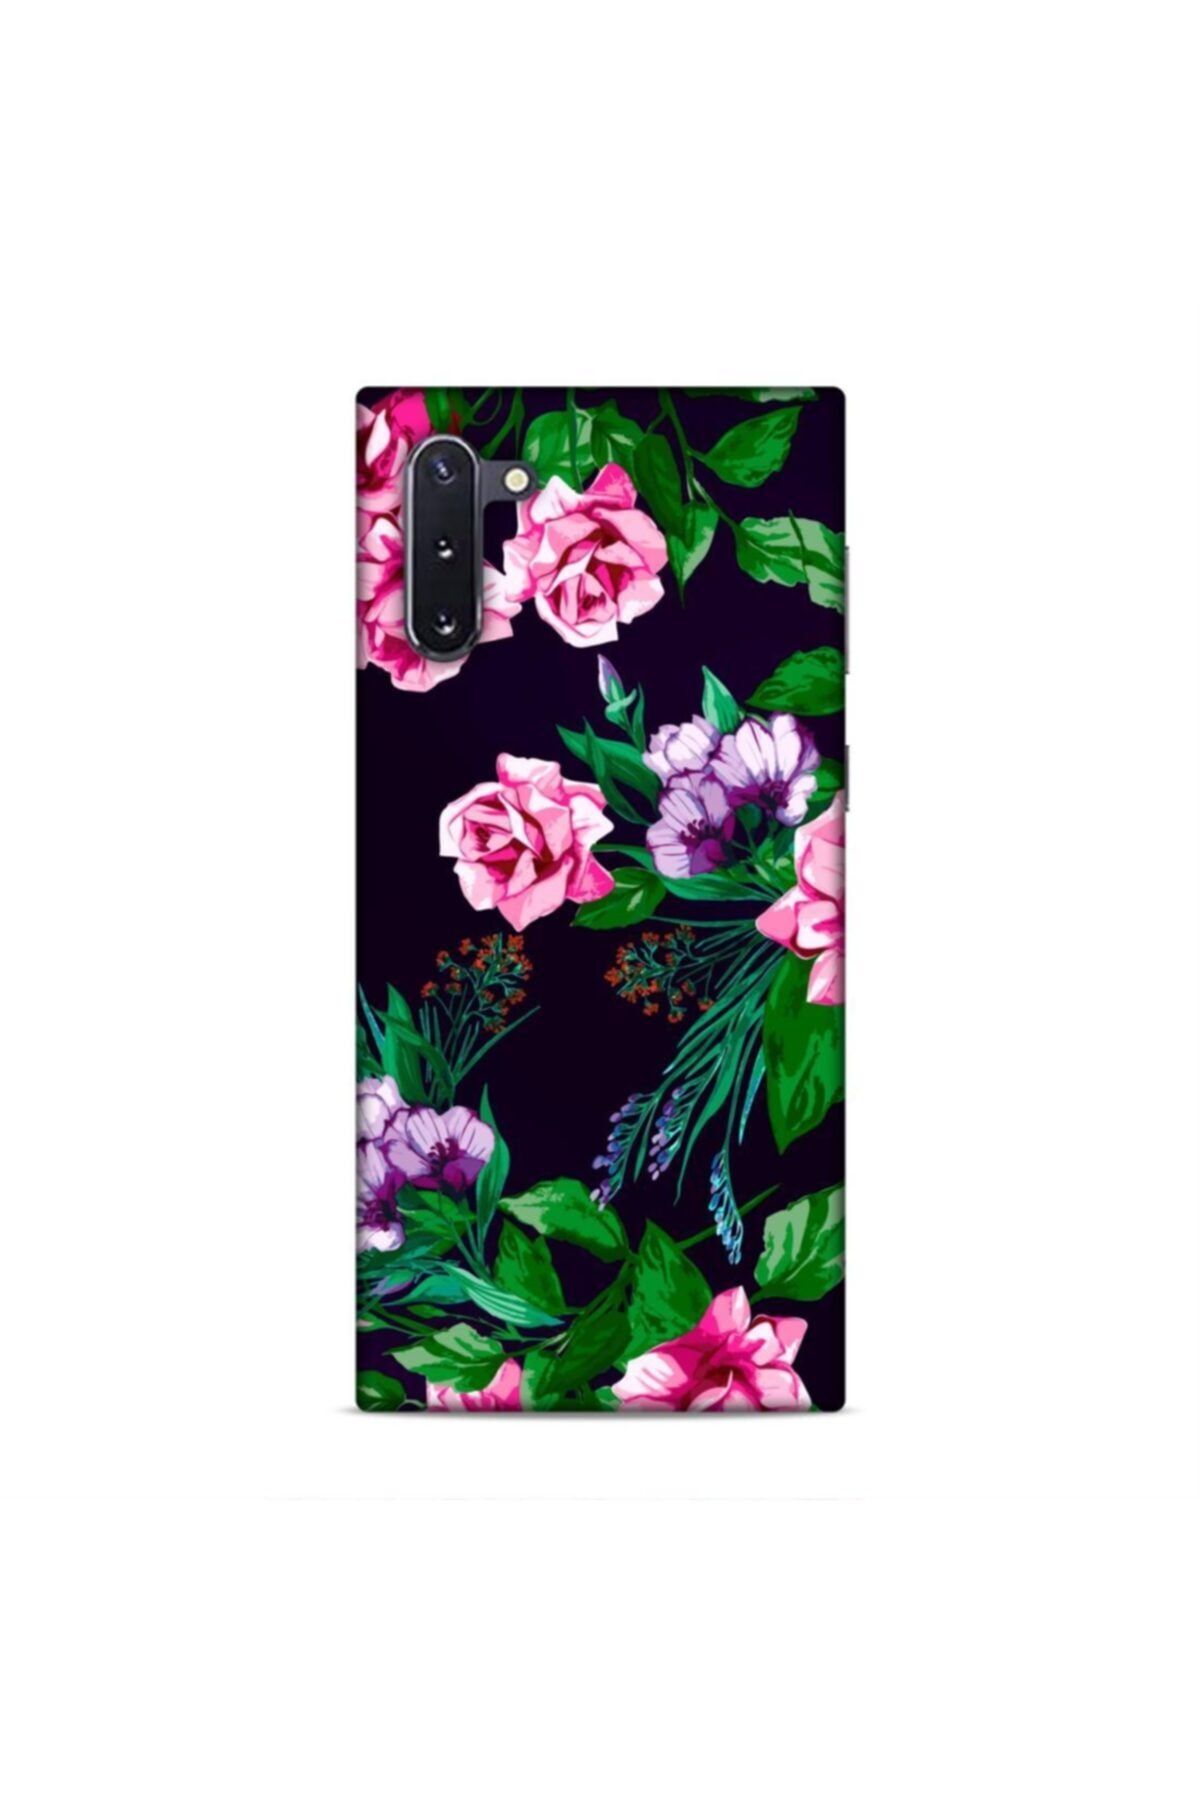 Pickcase Samsung Galaxy Note 10 Kılıf Desenli Arka Kapak Pembe Çiçekler